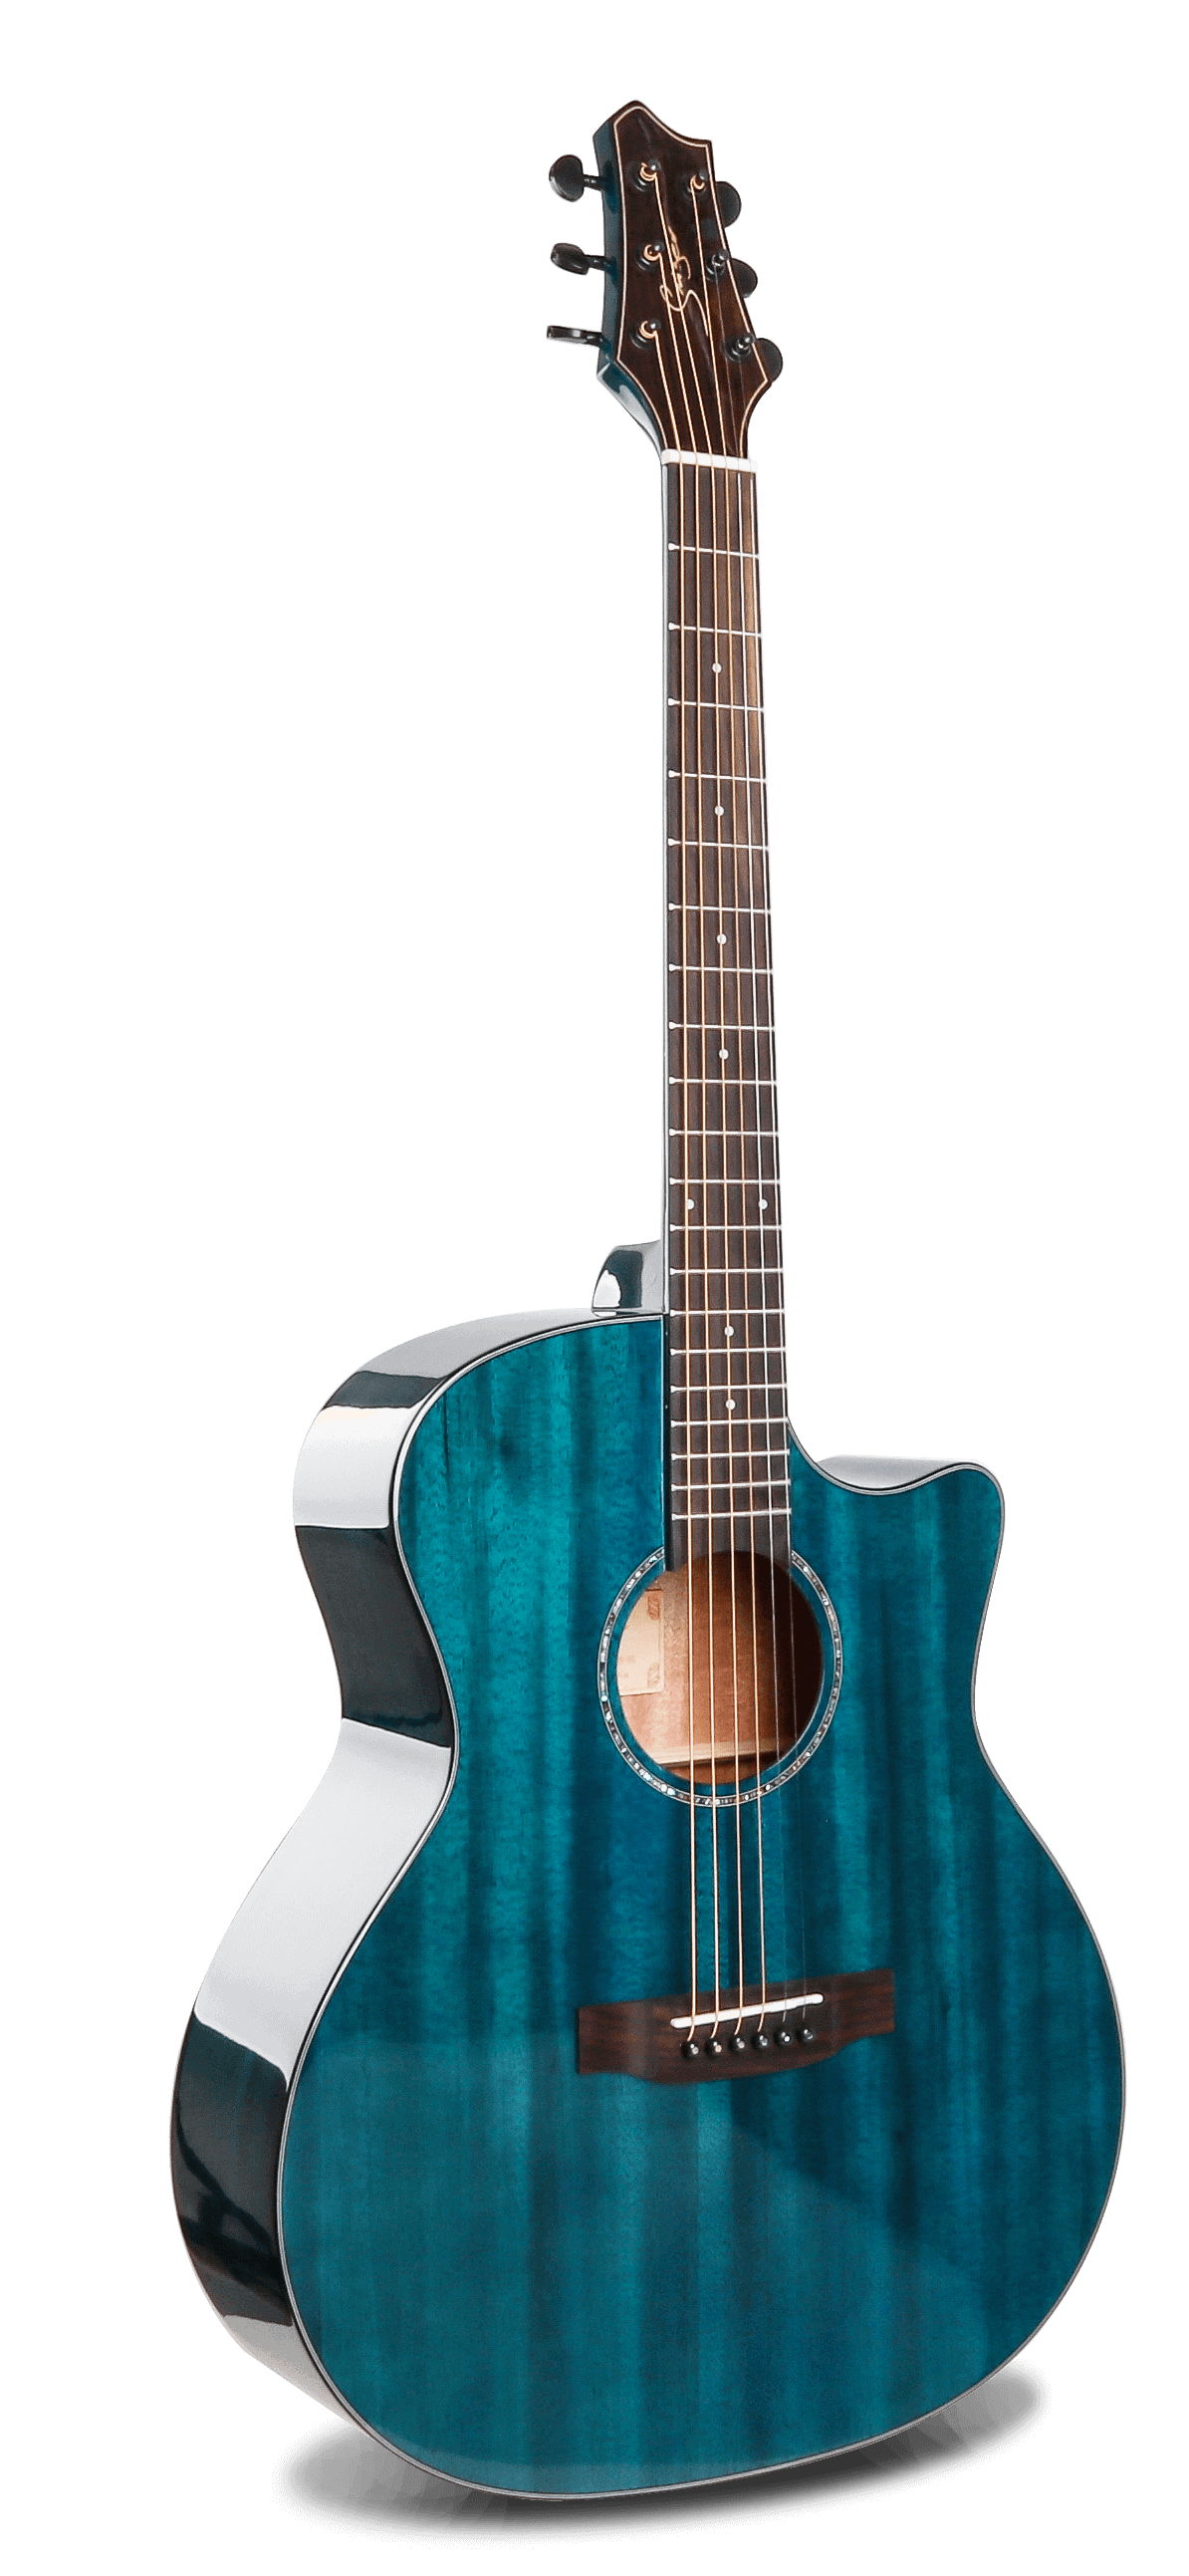 גיטרה אקוסטית סוליד טופ מוגברת Smiger- M-D10S-BL-חלק קדמי של הגיטרה